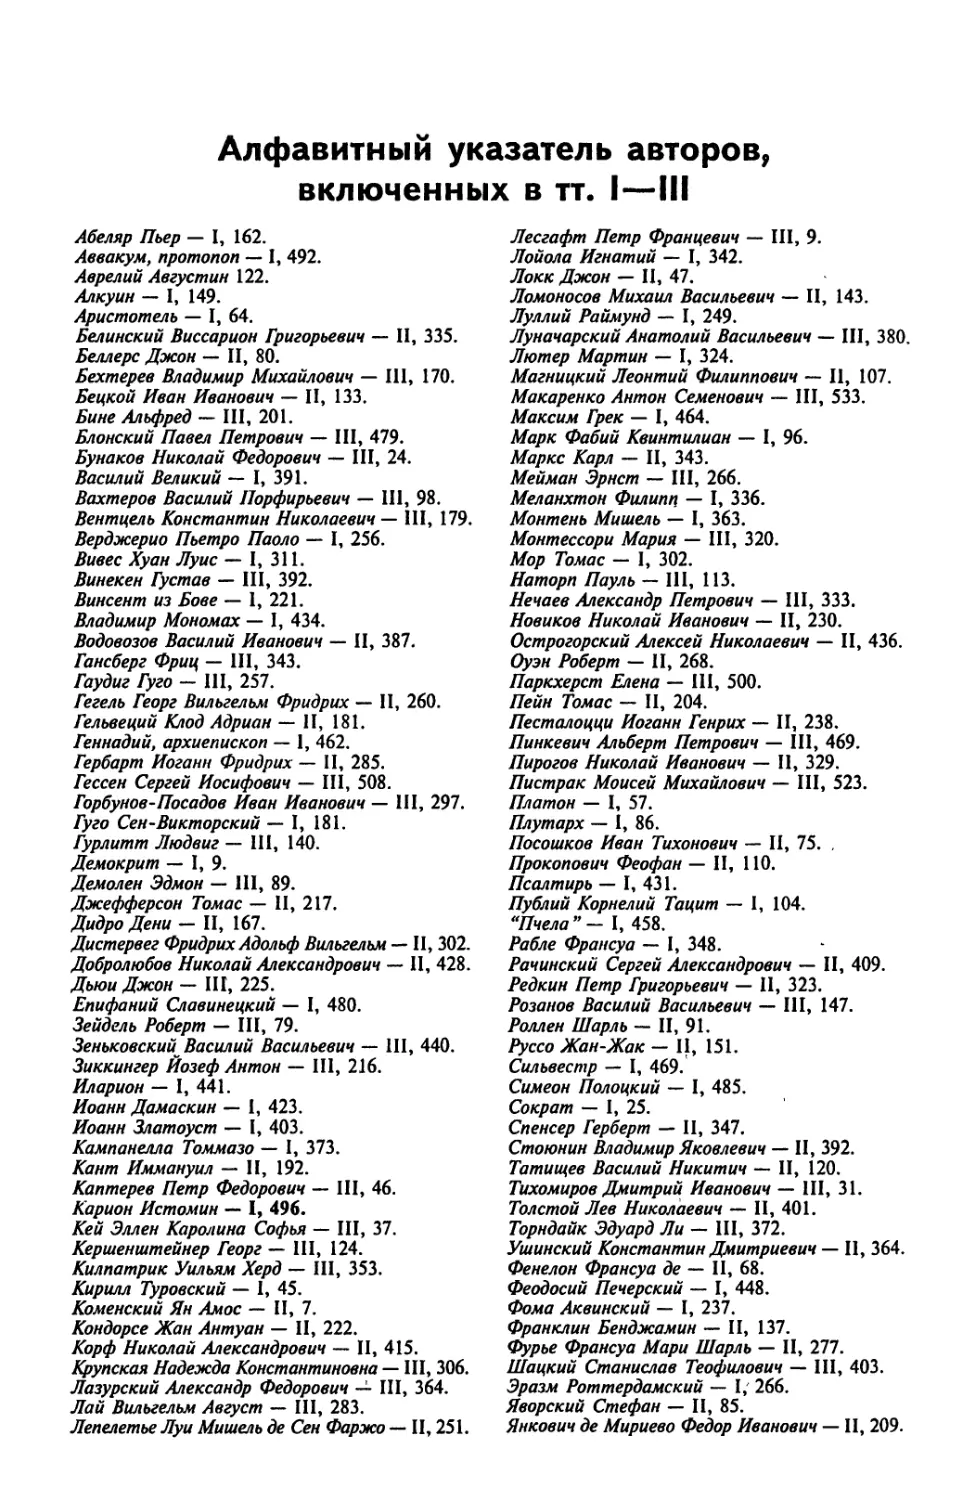 Алфавитный указатель авторов, включённых в тт. I-III